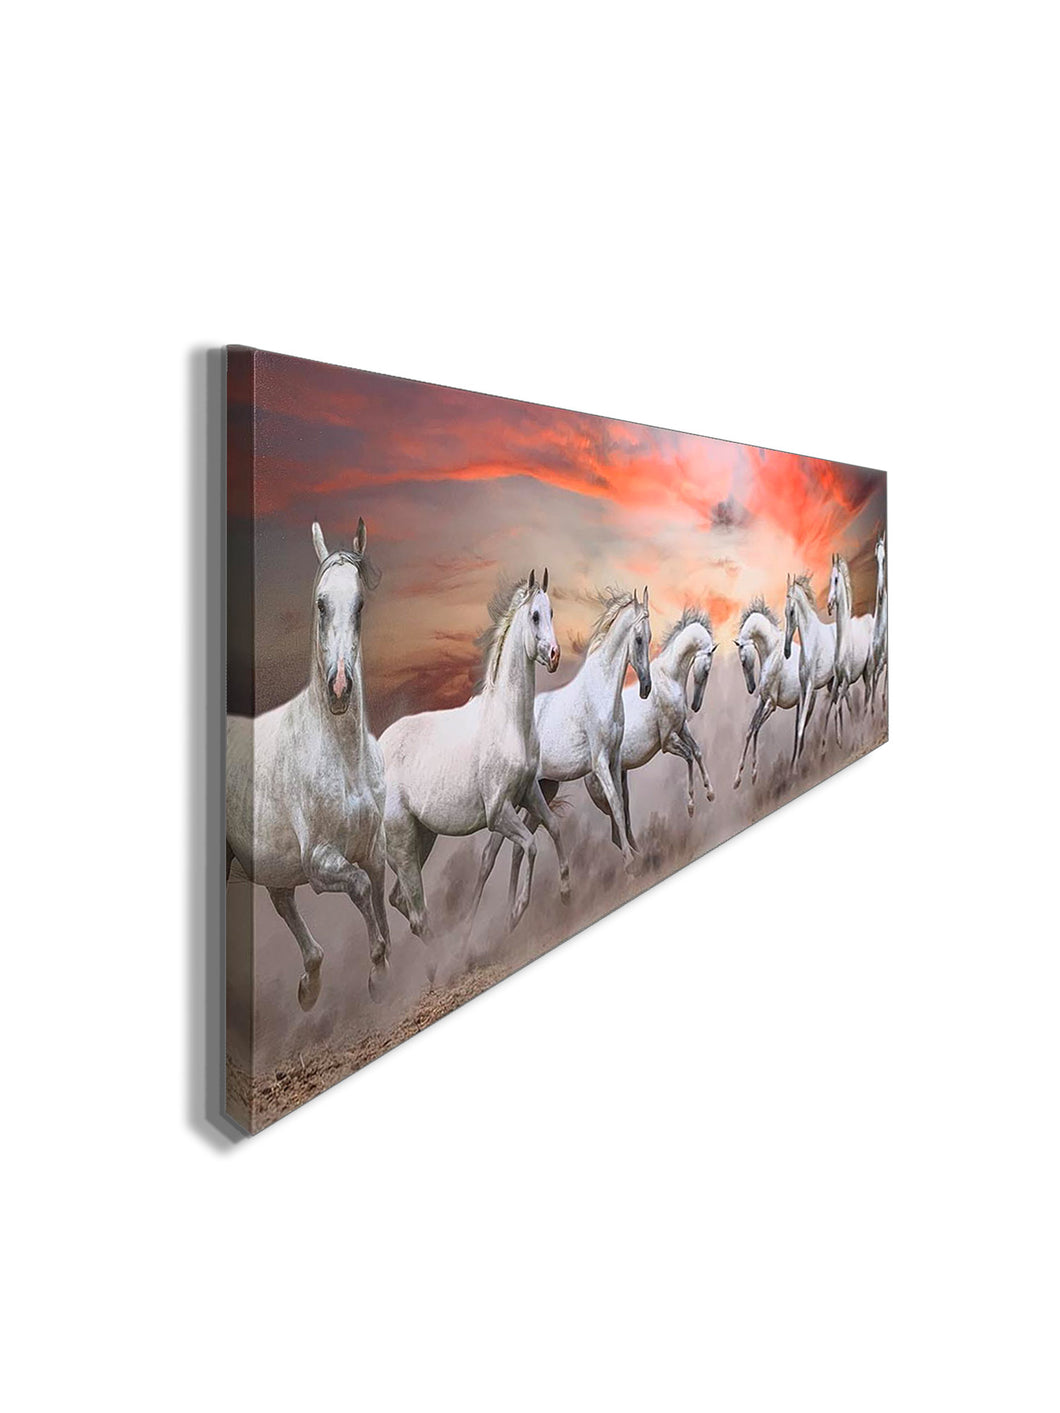 Arabian Horses and Fire Sky- Wall Decor- Wildlife Canvas Art - Diamond varnish